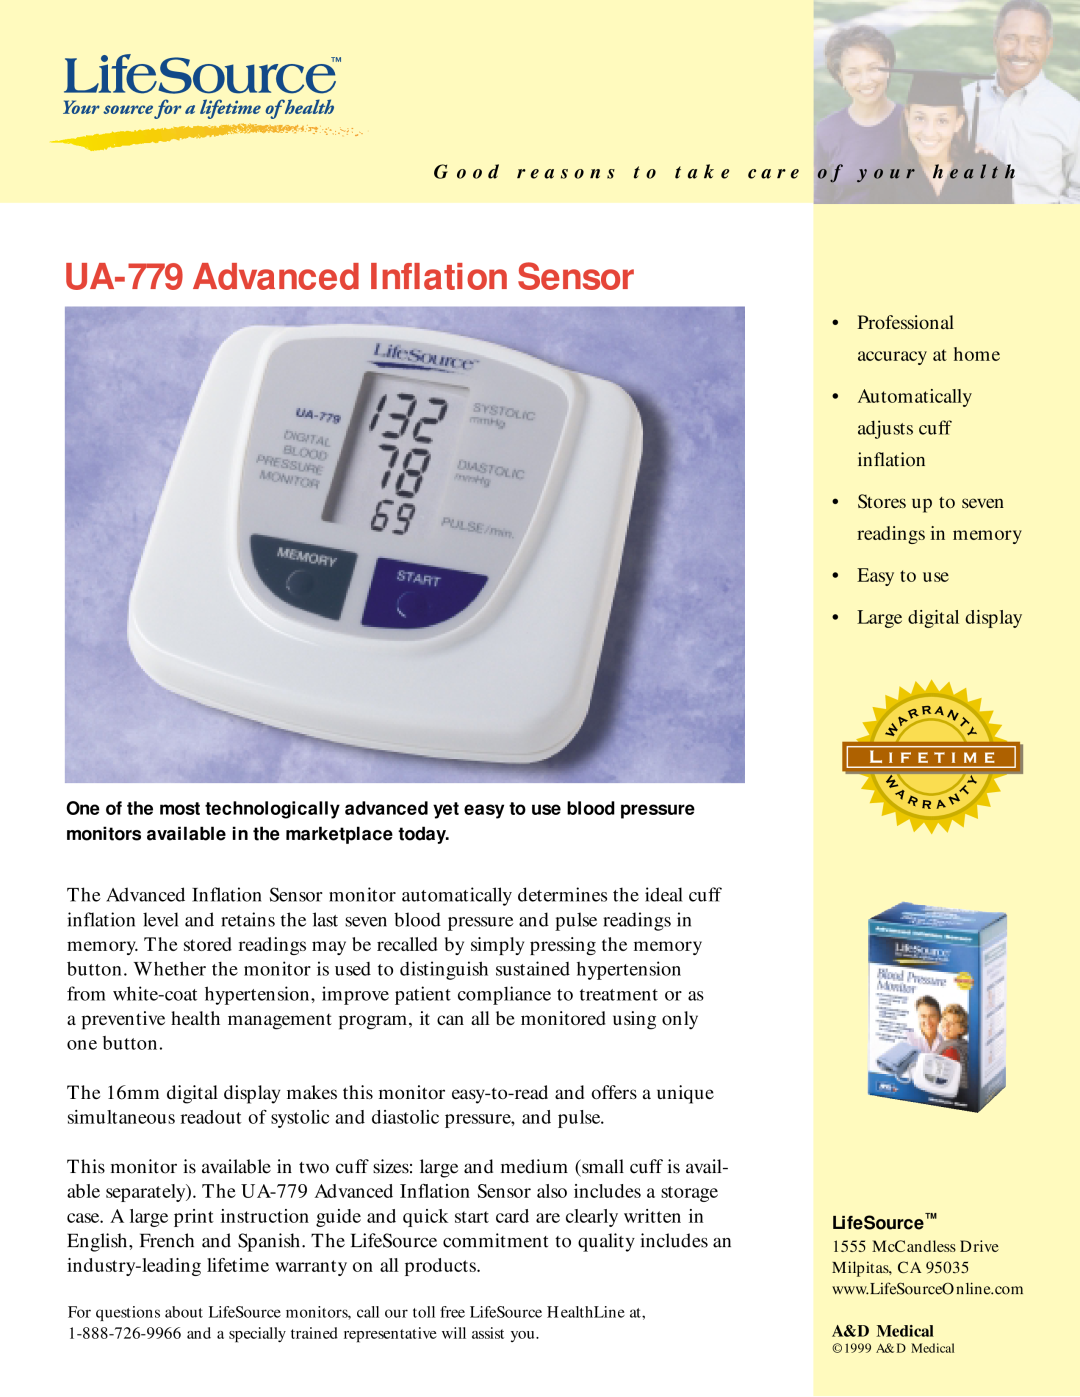 LifeSource manual UA-779 Advanced Inflation Sensor, G o o d r e a s o n s t o t a k e c a r e o f y o u r h e a l t h 